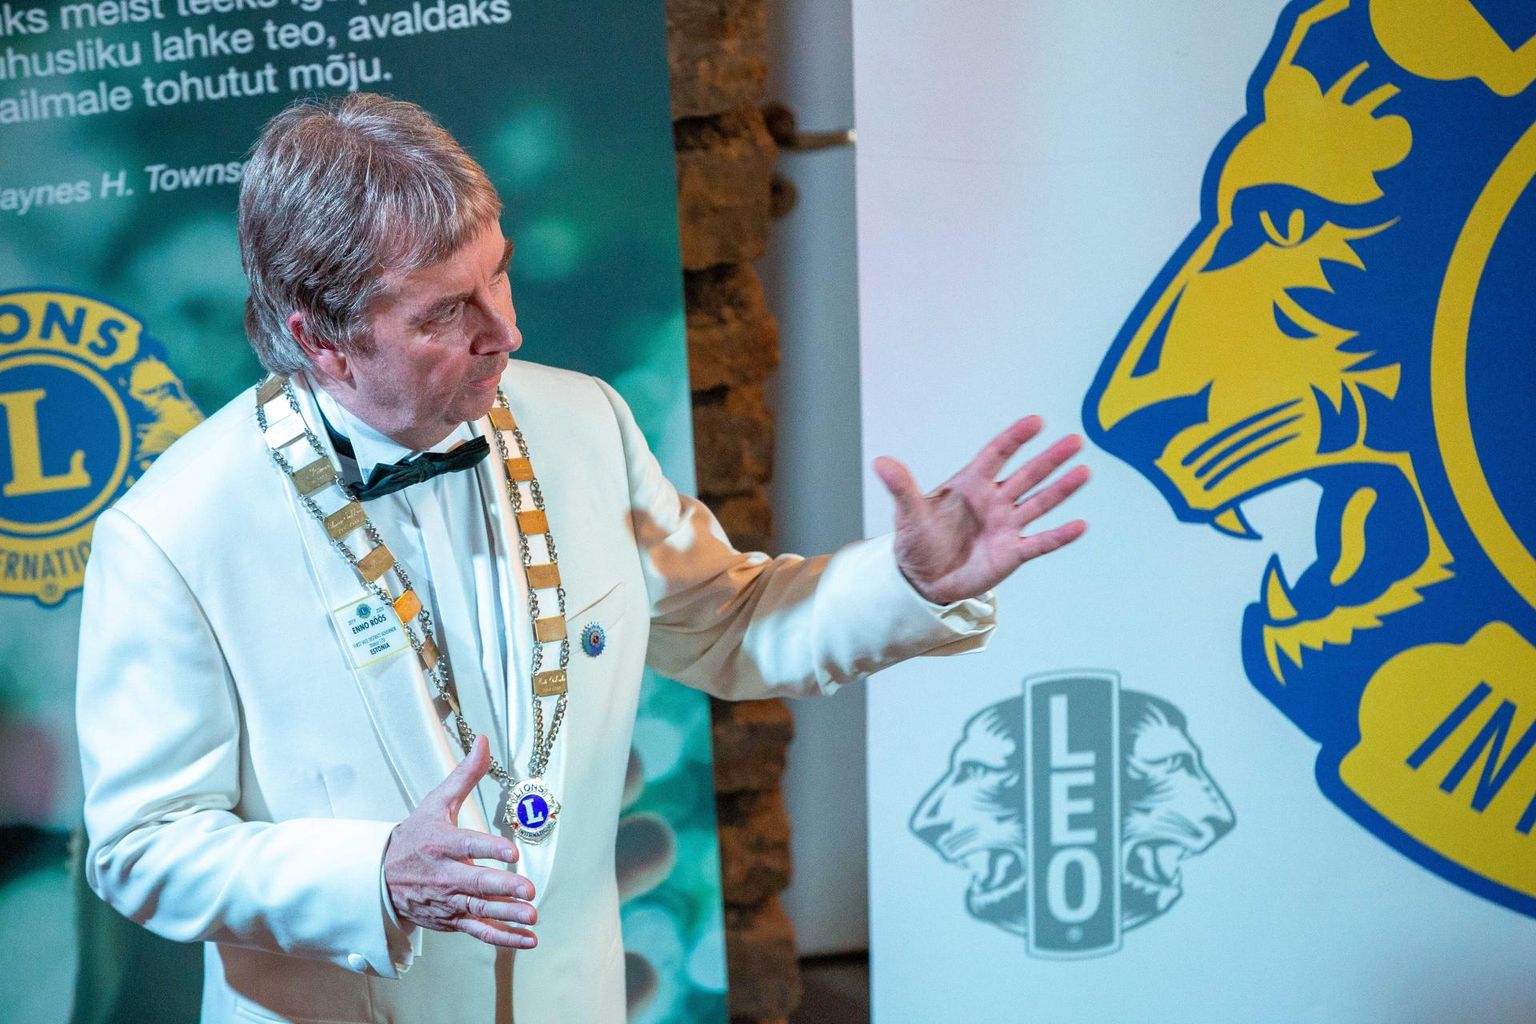 Lions Eesti piirkonna kuberneri ketti kannab aasta aega paidelane Enno Rõõs.